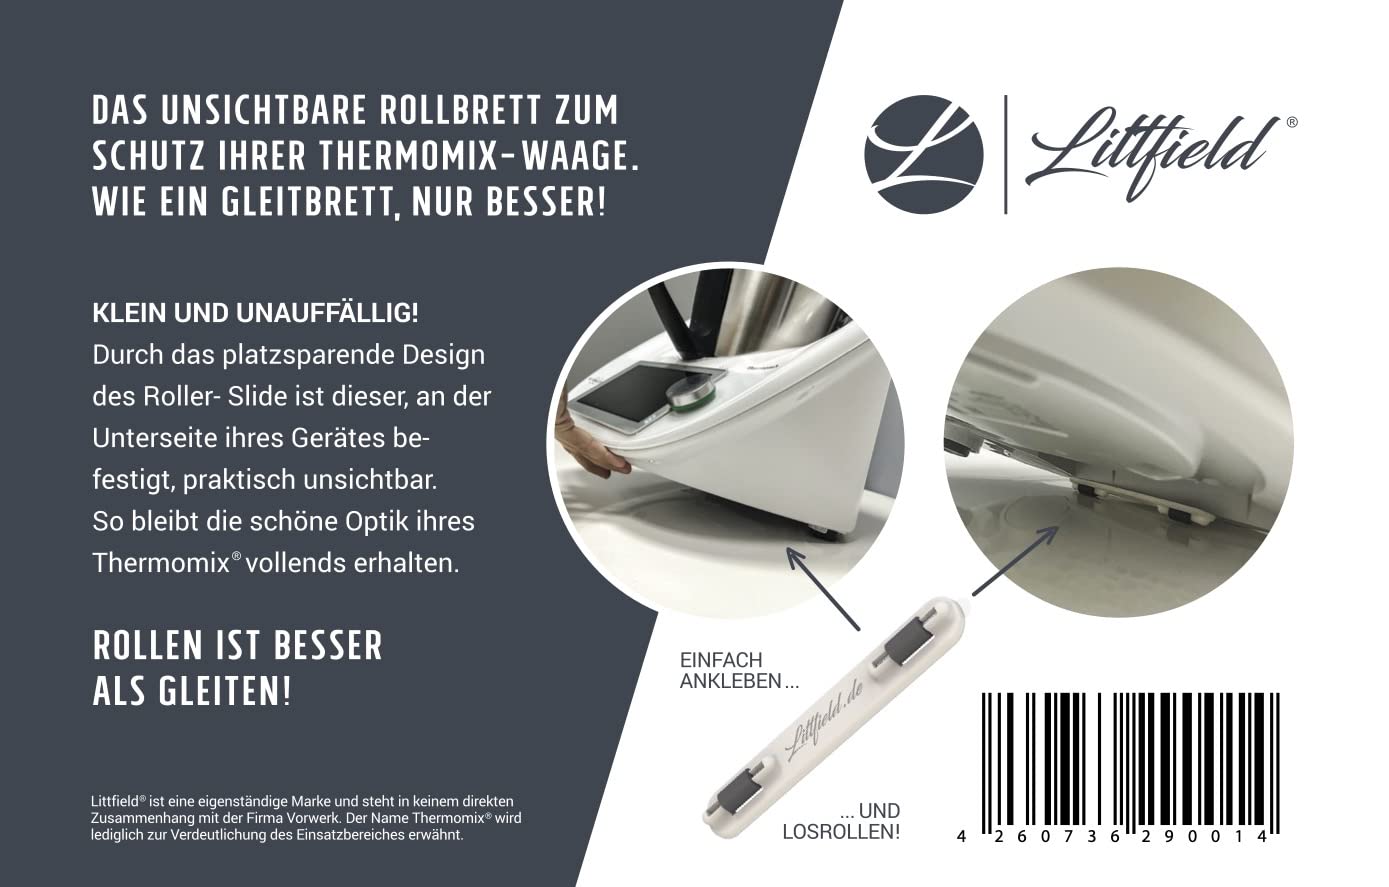 Littfield Roller-Slide Weiß - Thermomix Gleitbrett Alternative TM6 & TM5